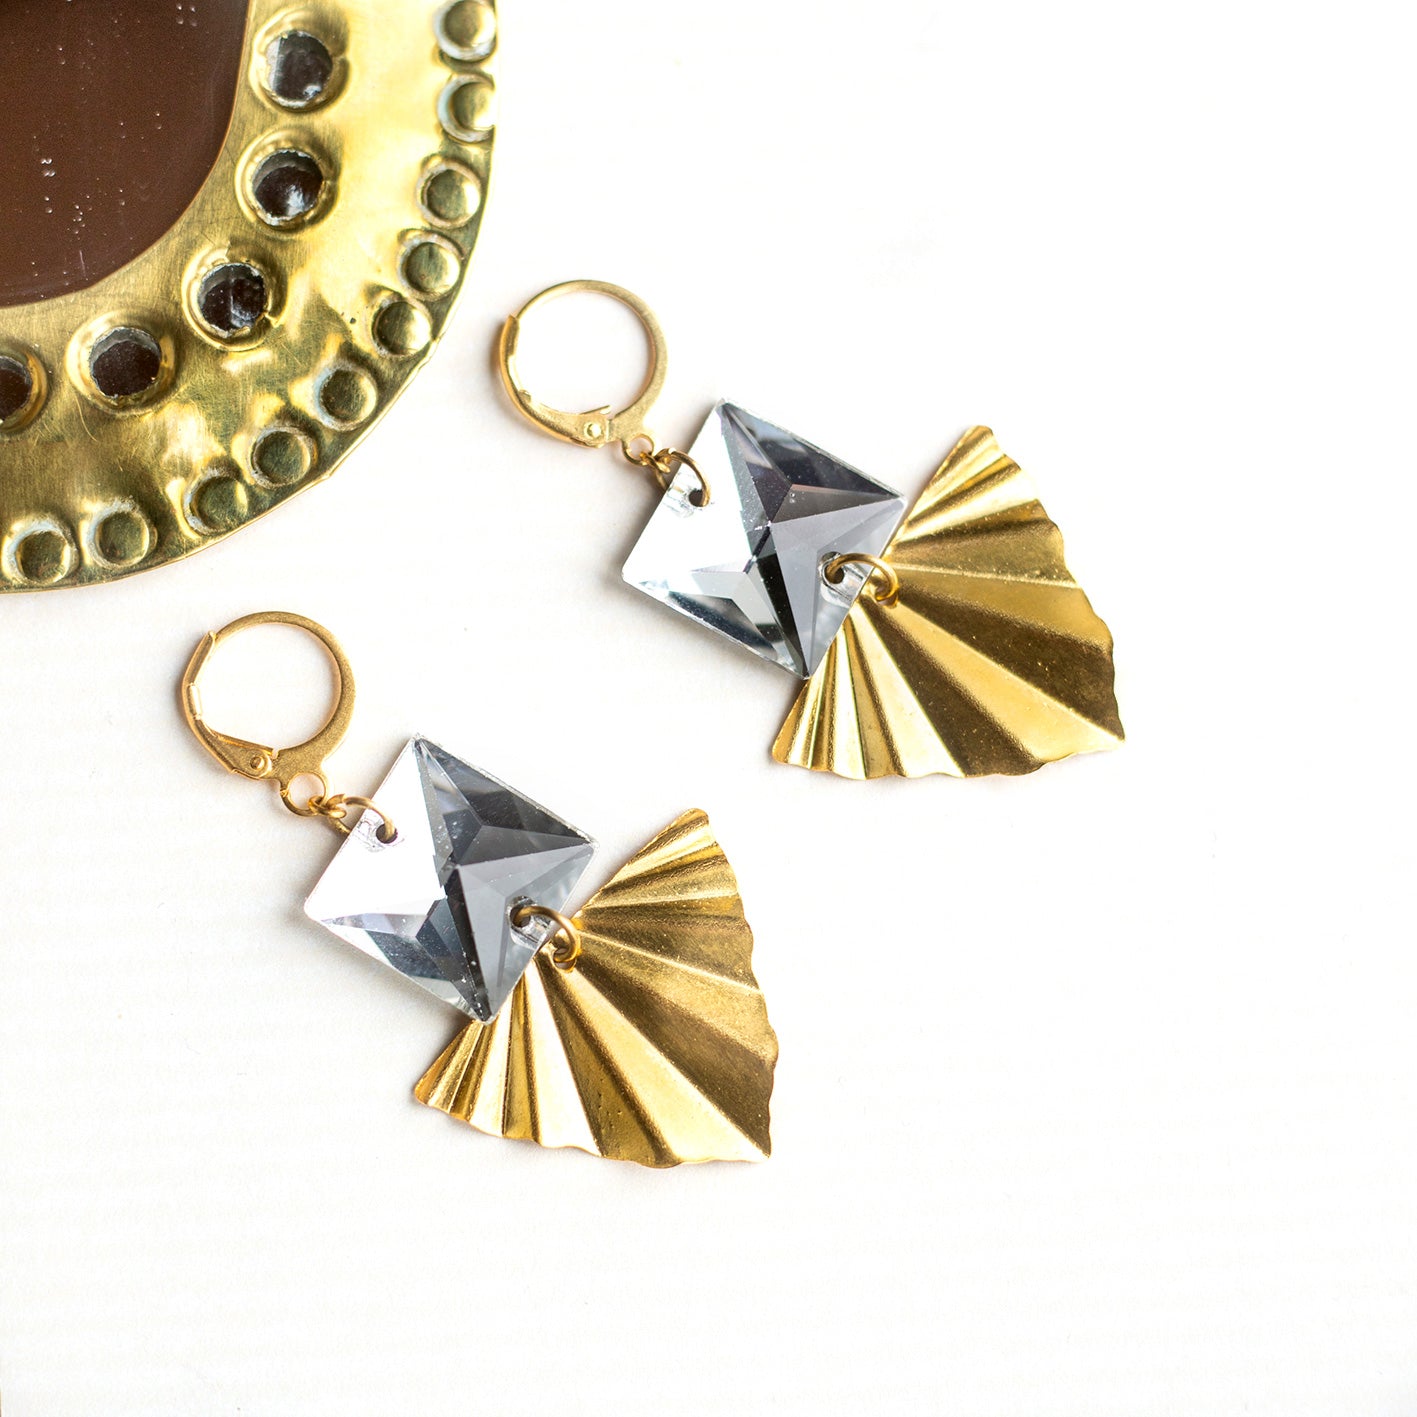 Boucles d'oreilles carrés en cristal vintage et pendentifs triangle dorés